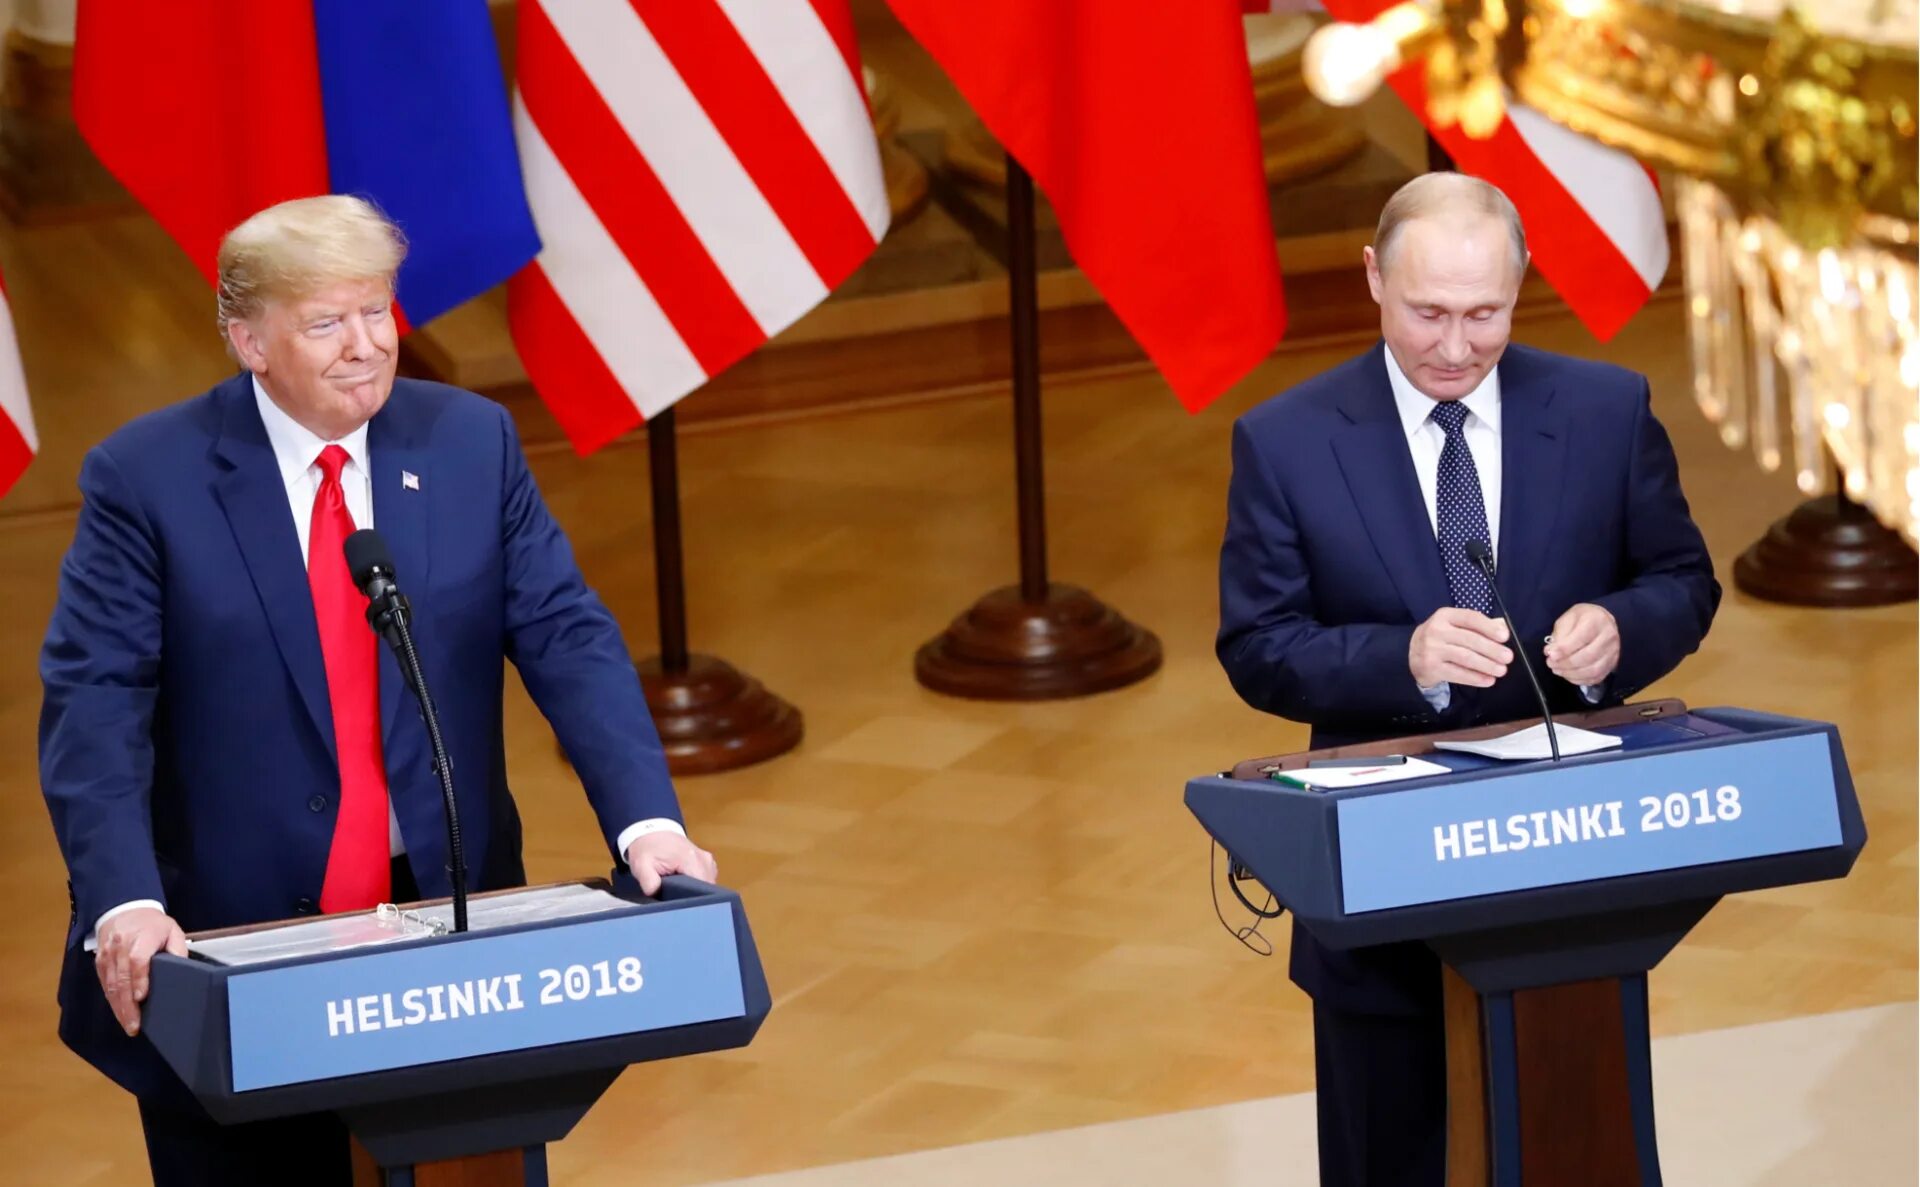 Встреча Путина и Трампа в Хельсинки 2018. Переговоры.